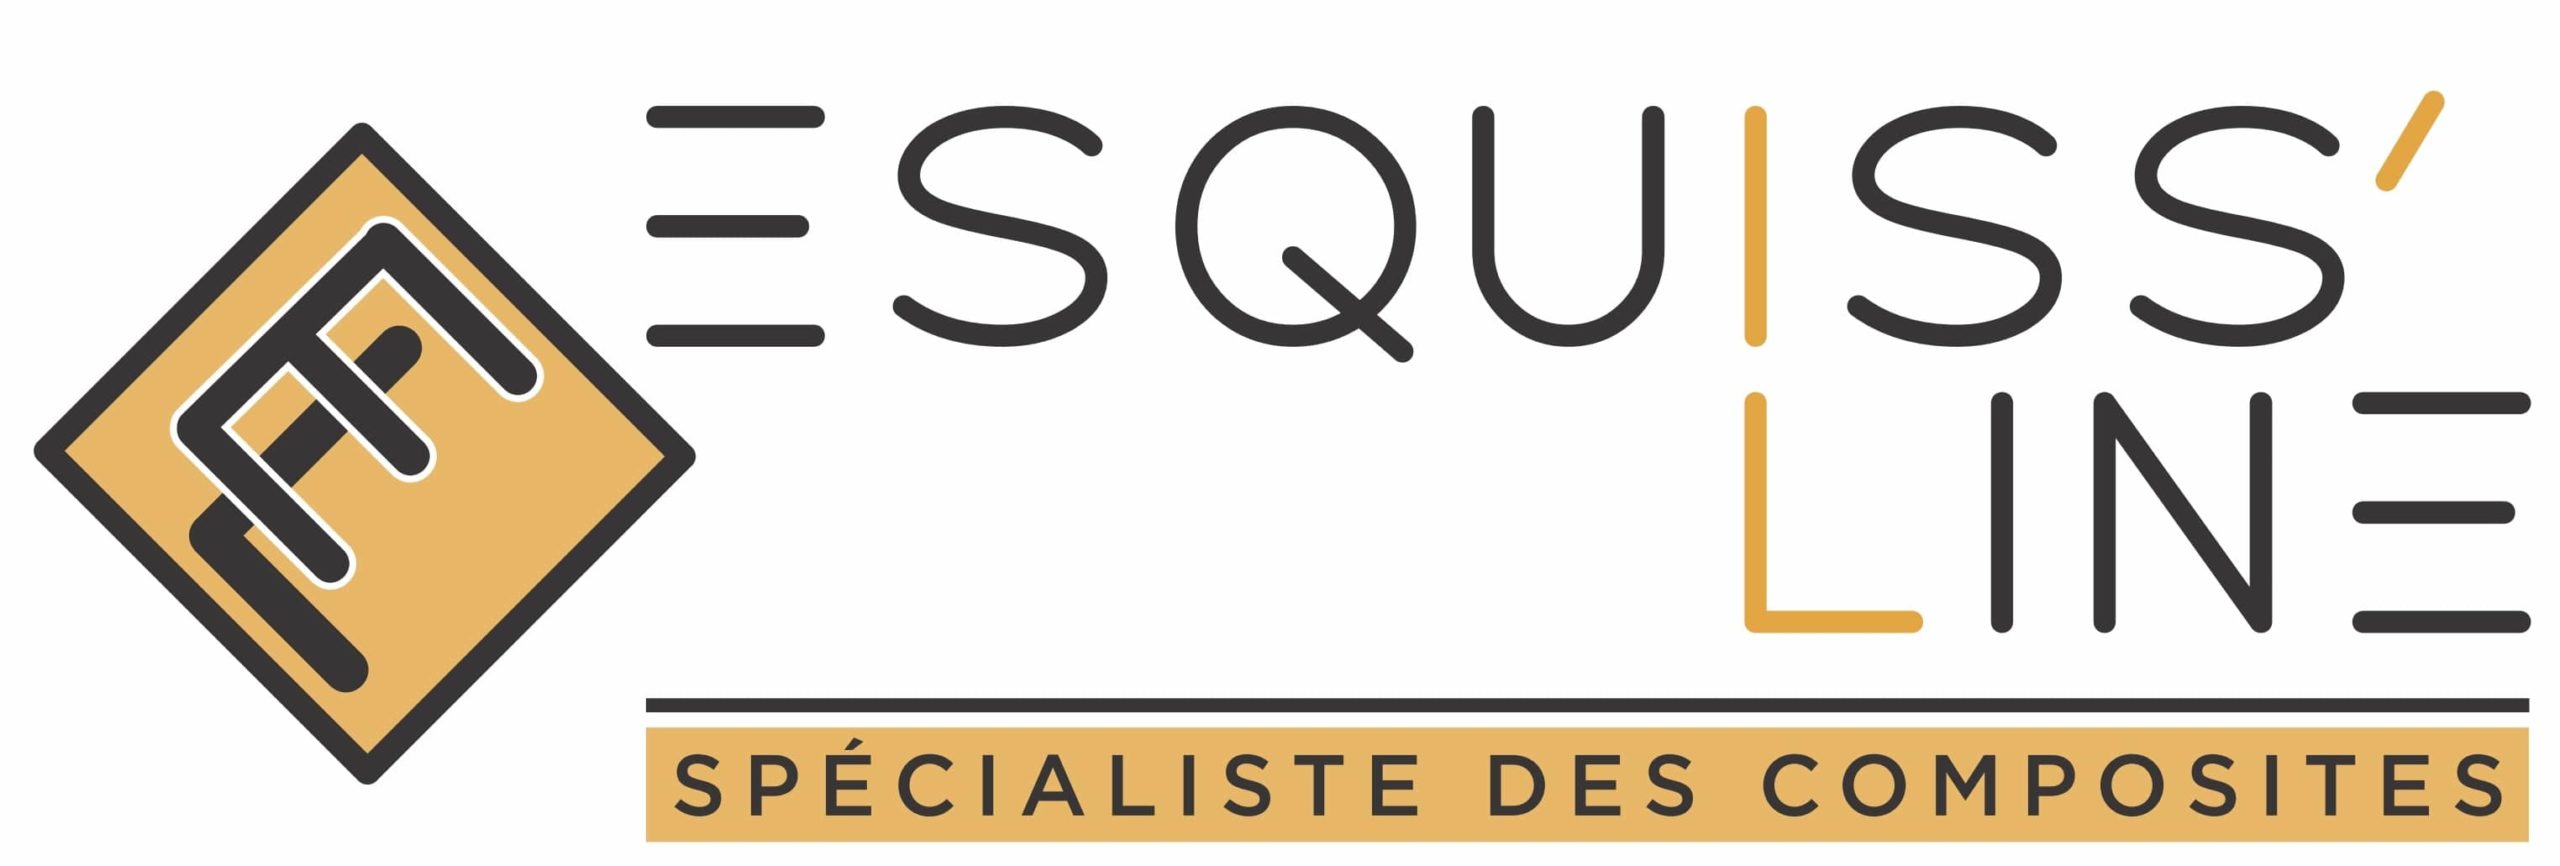 Esquiss Line Logo